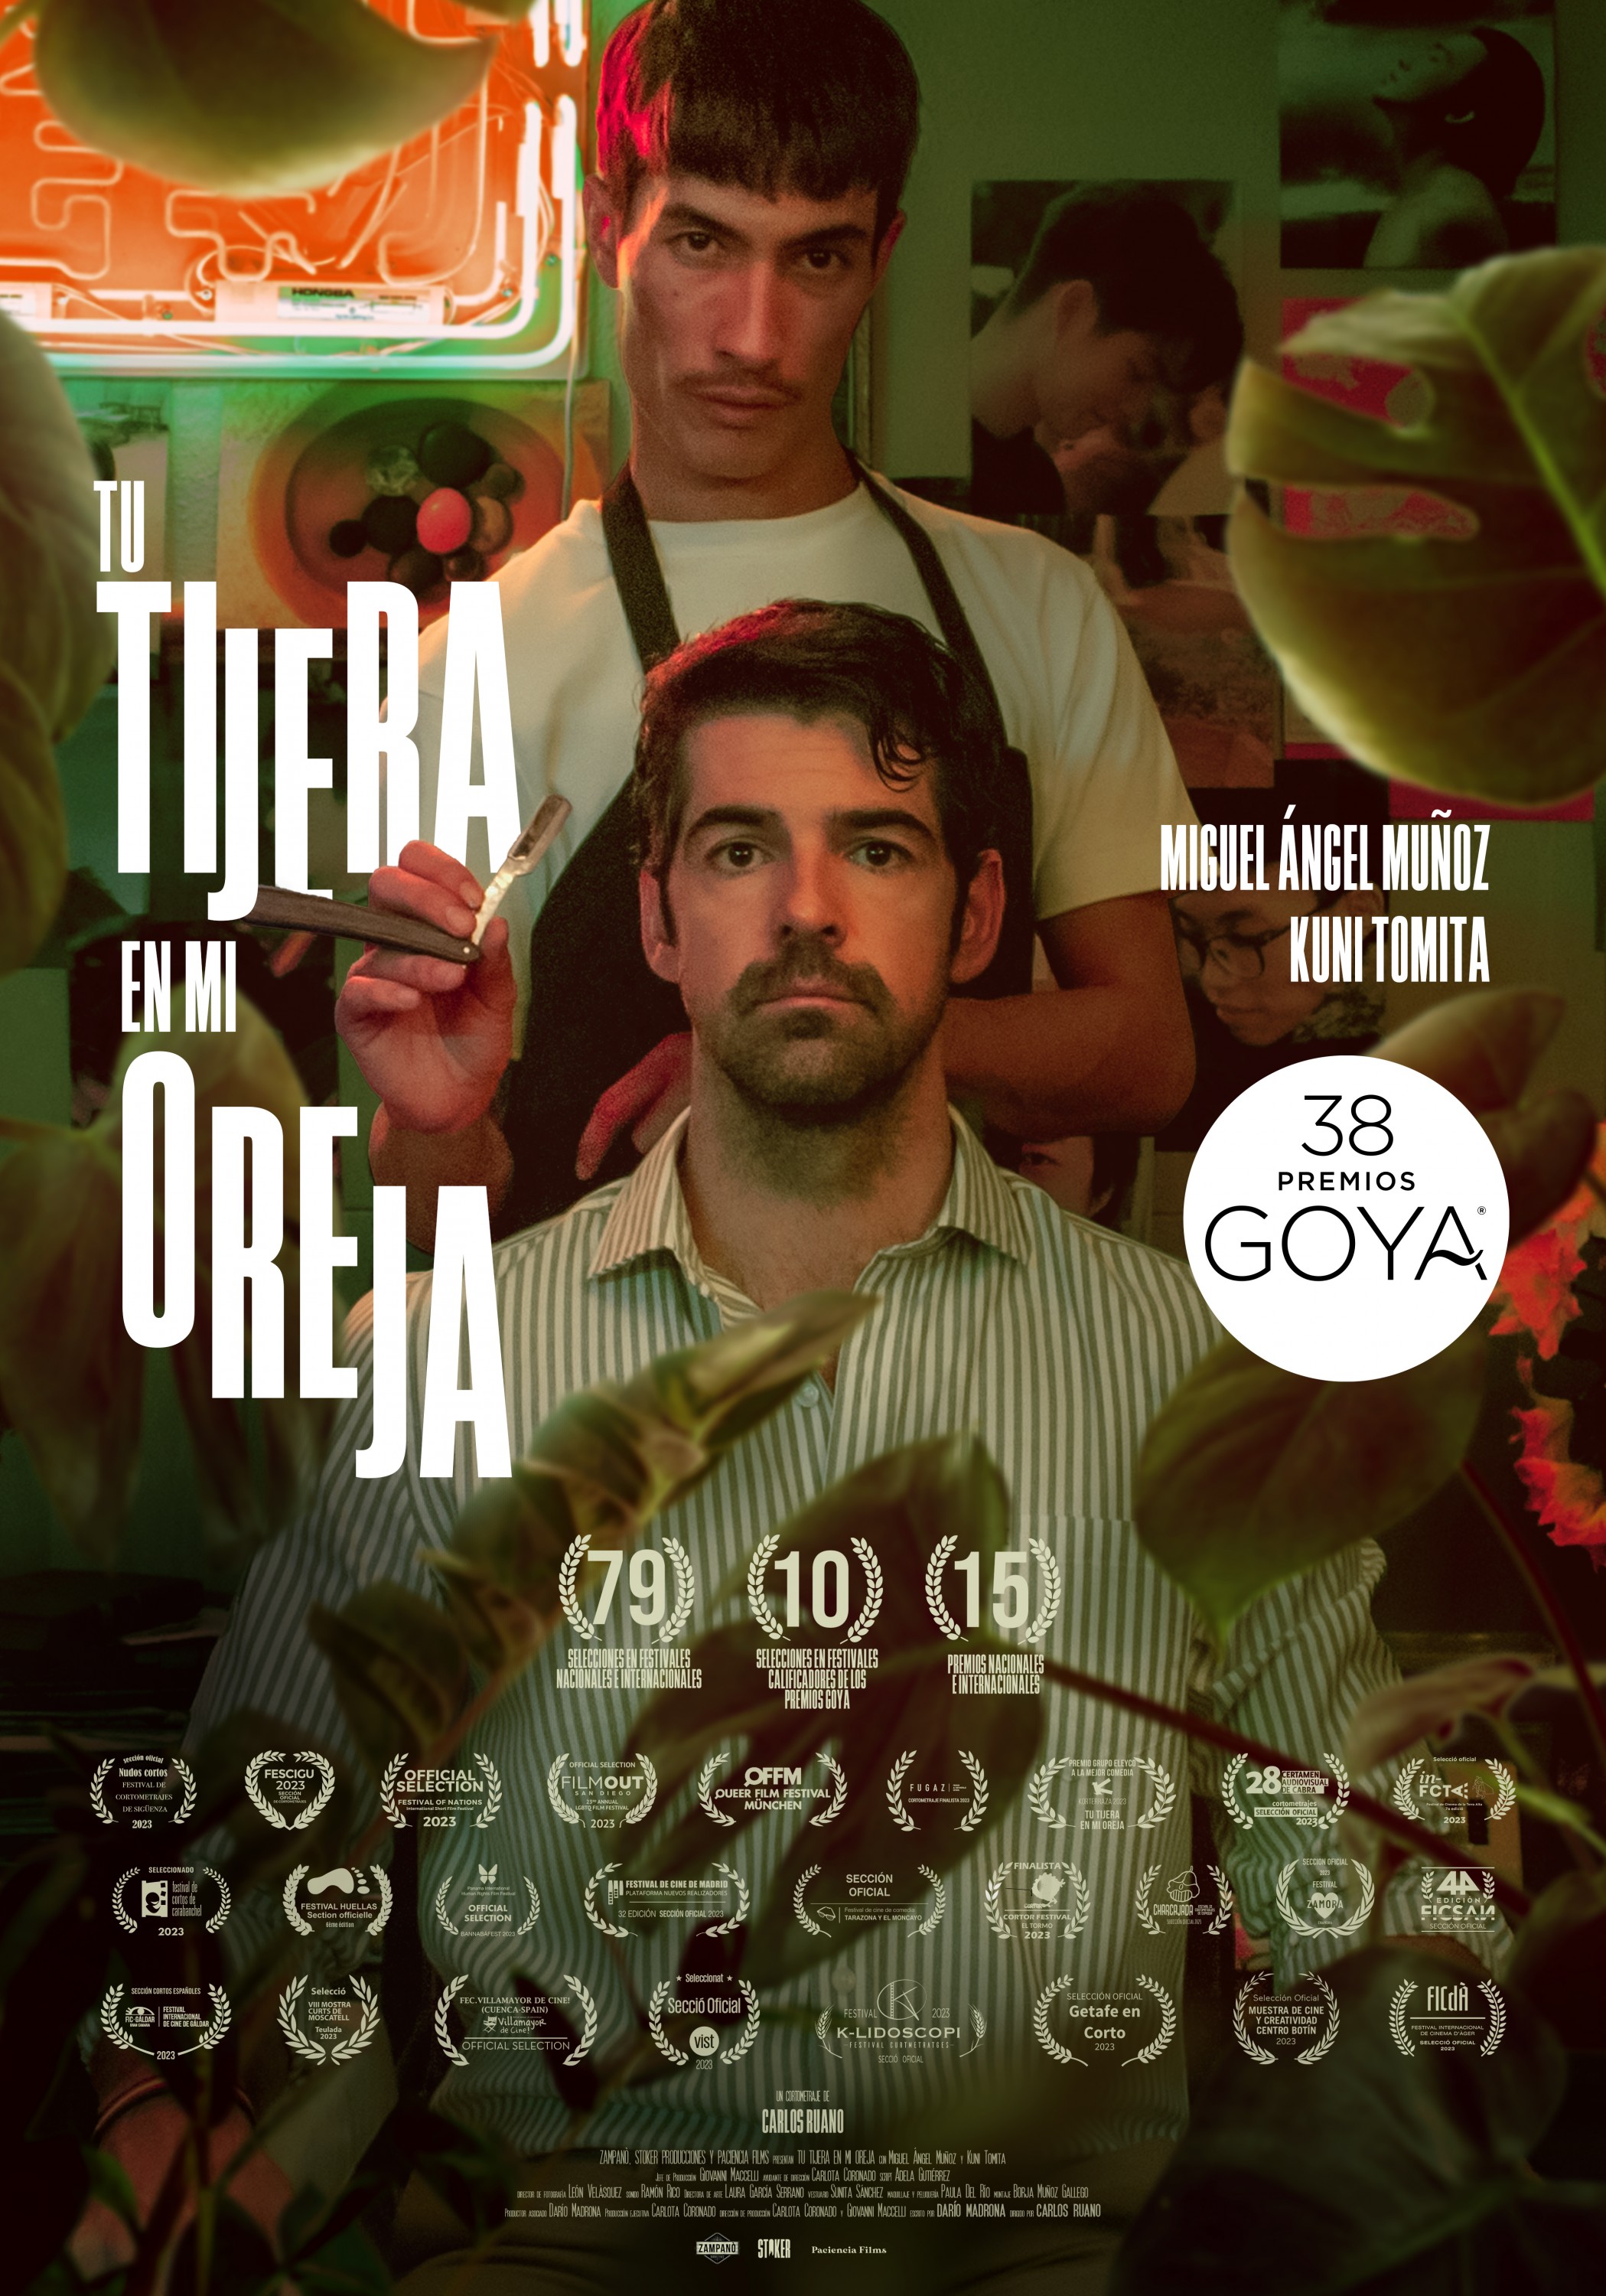 Mega Sized Movie Poster Image for Tu tijera en mi oreja